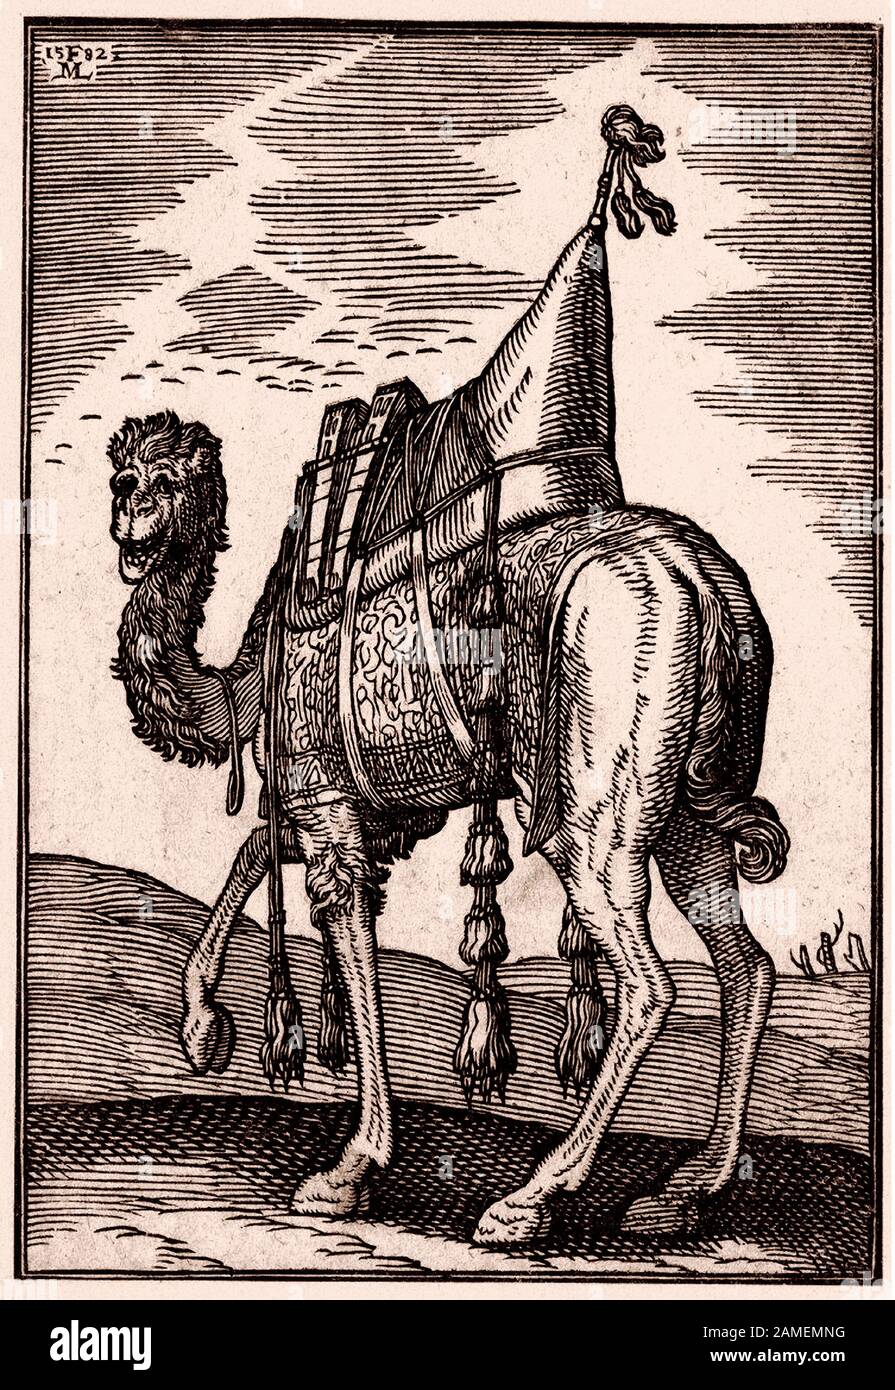 L'histoire de l'Empire ottoman. Un chameau avec une riche selle ornée. Par Melchior Lorck. xvie siècle Banque D'Images